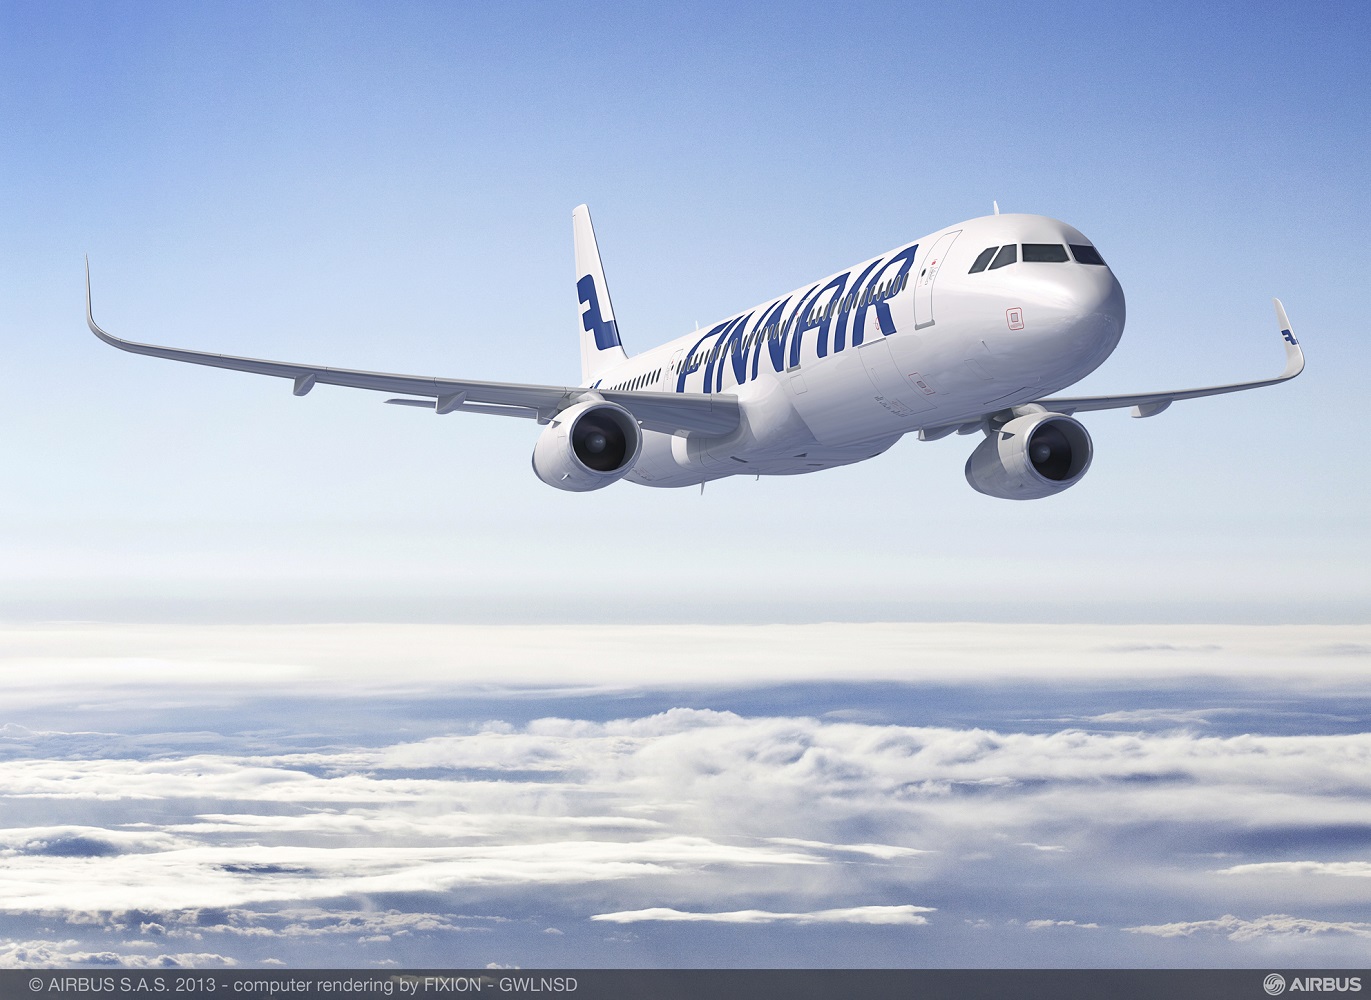 PRZEGLĄD PROMOCJI: oferta Finnair do 21 stycznia